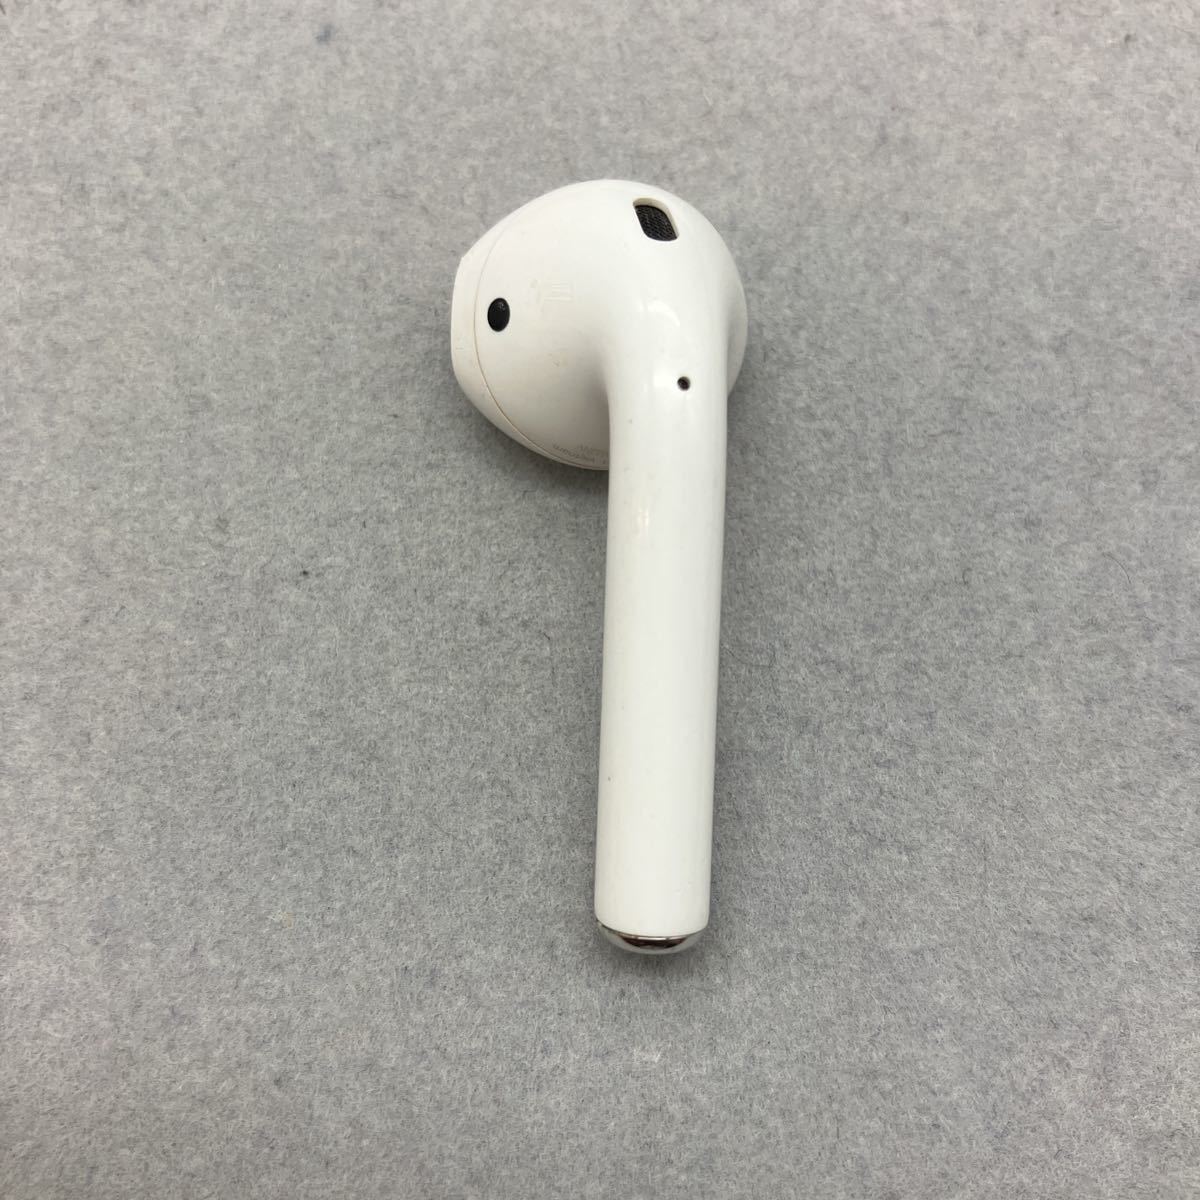 即決 純正 Apple アップル AirPods 第ニ世代 左耳のみ A2031_画像1